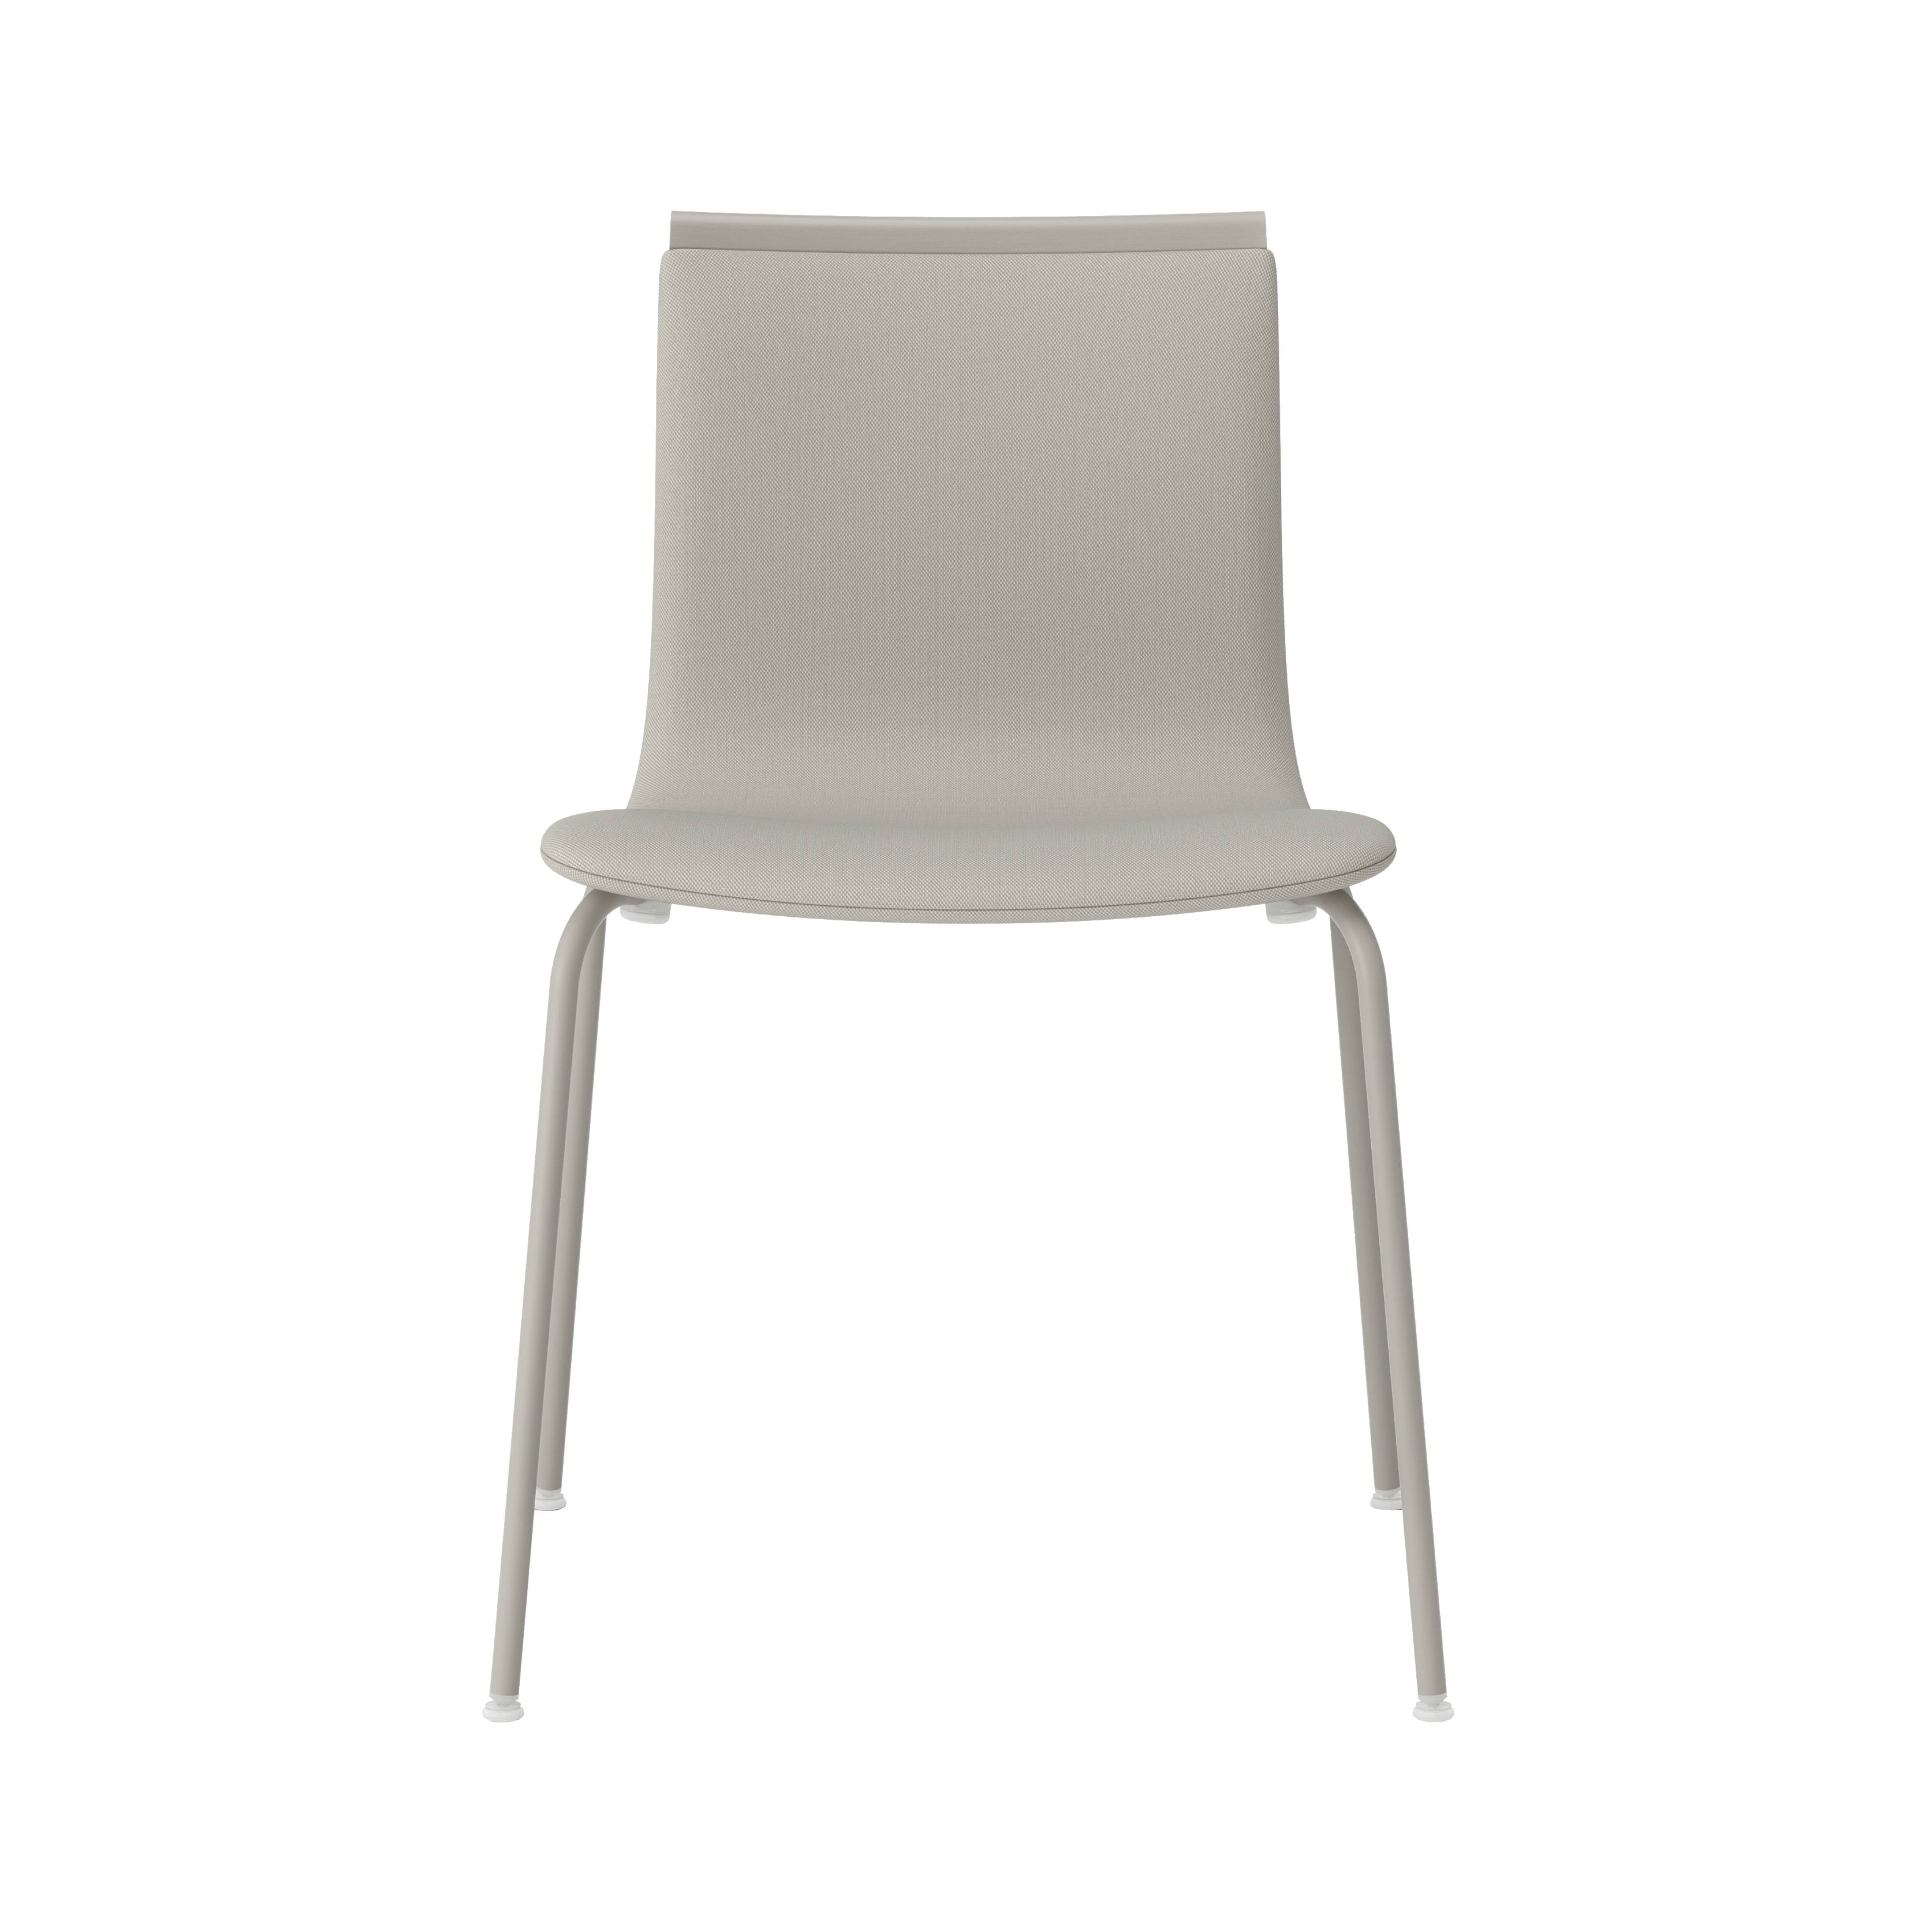 Serif Chair: Tube Legs + Upholstered